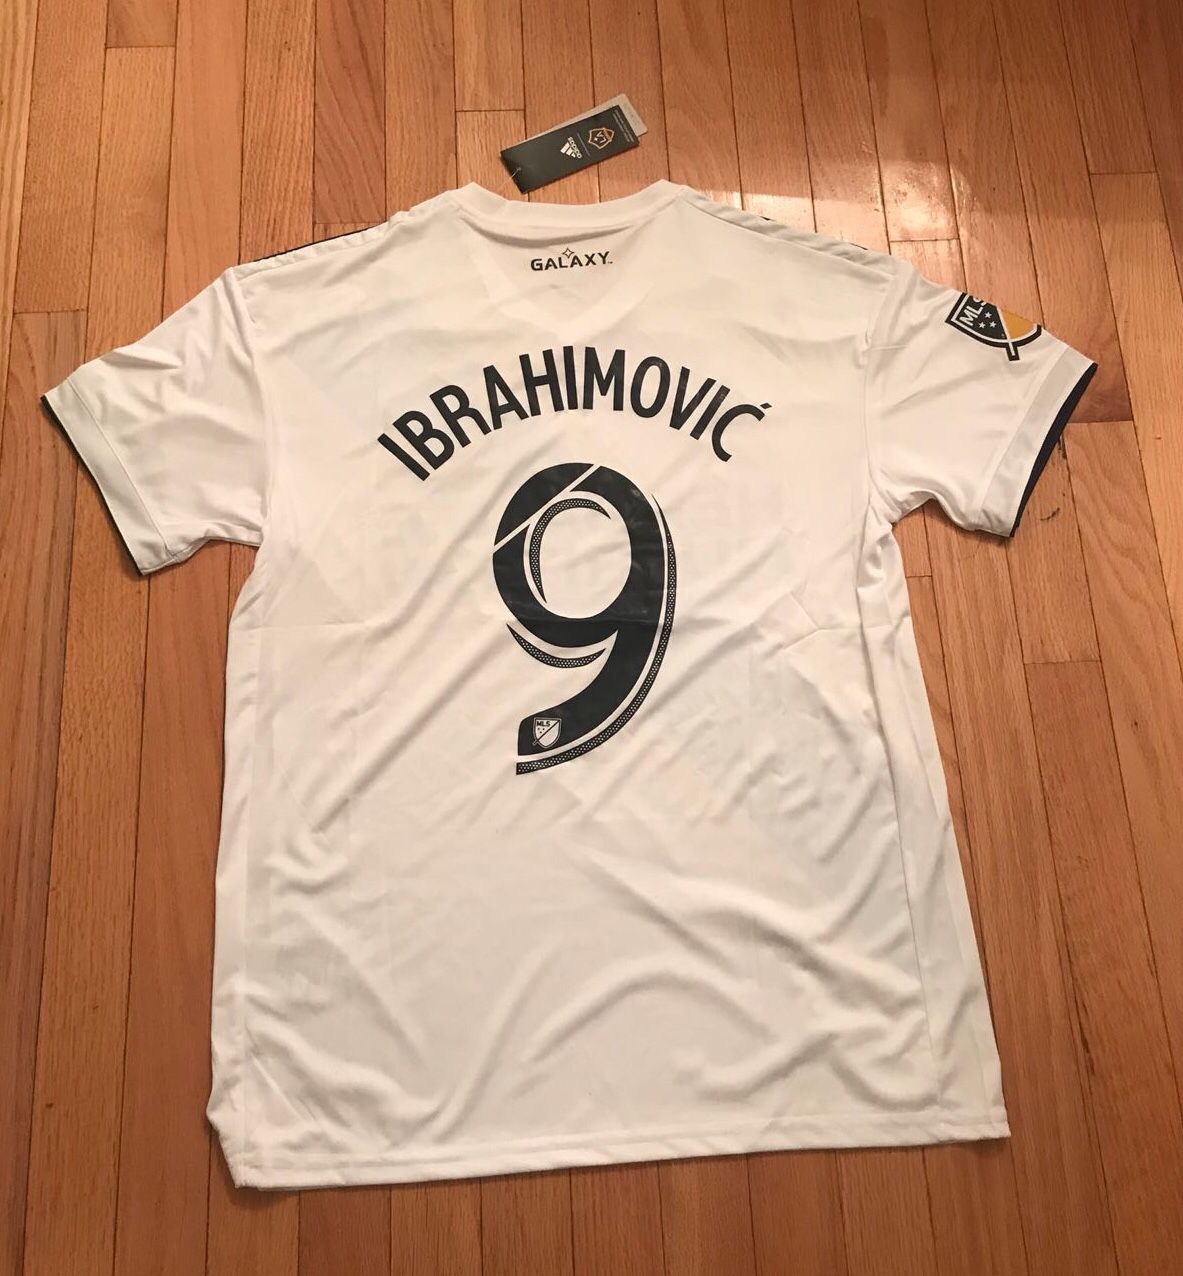 NEW Zlatan Ibrahimovic LA Galaxy jersey size M